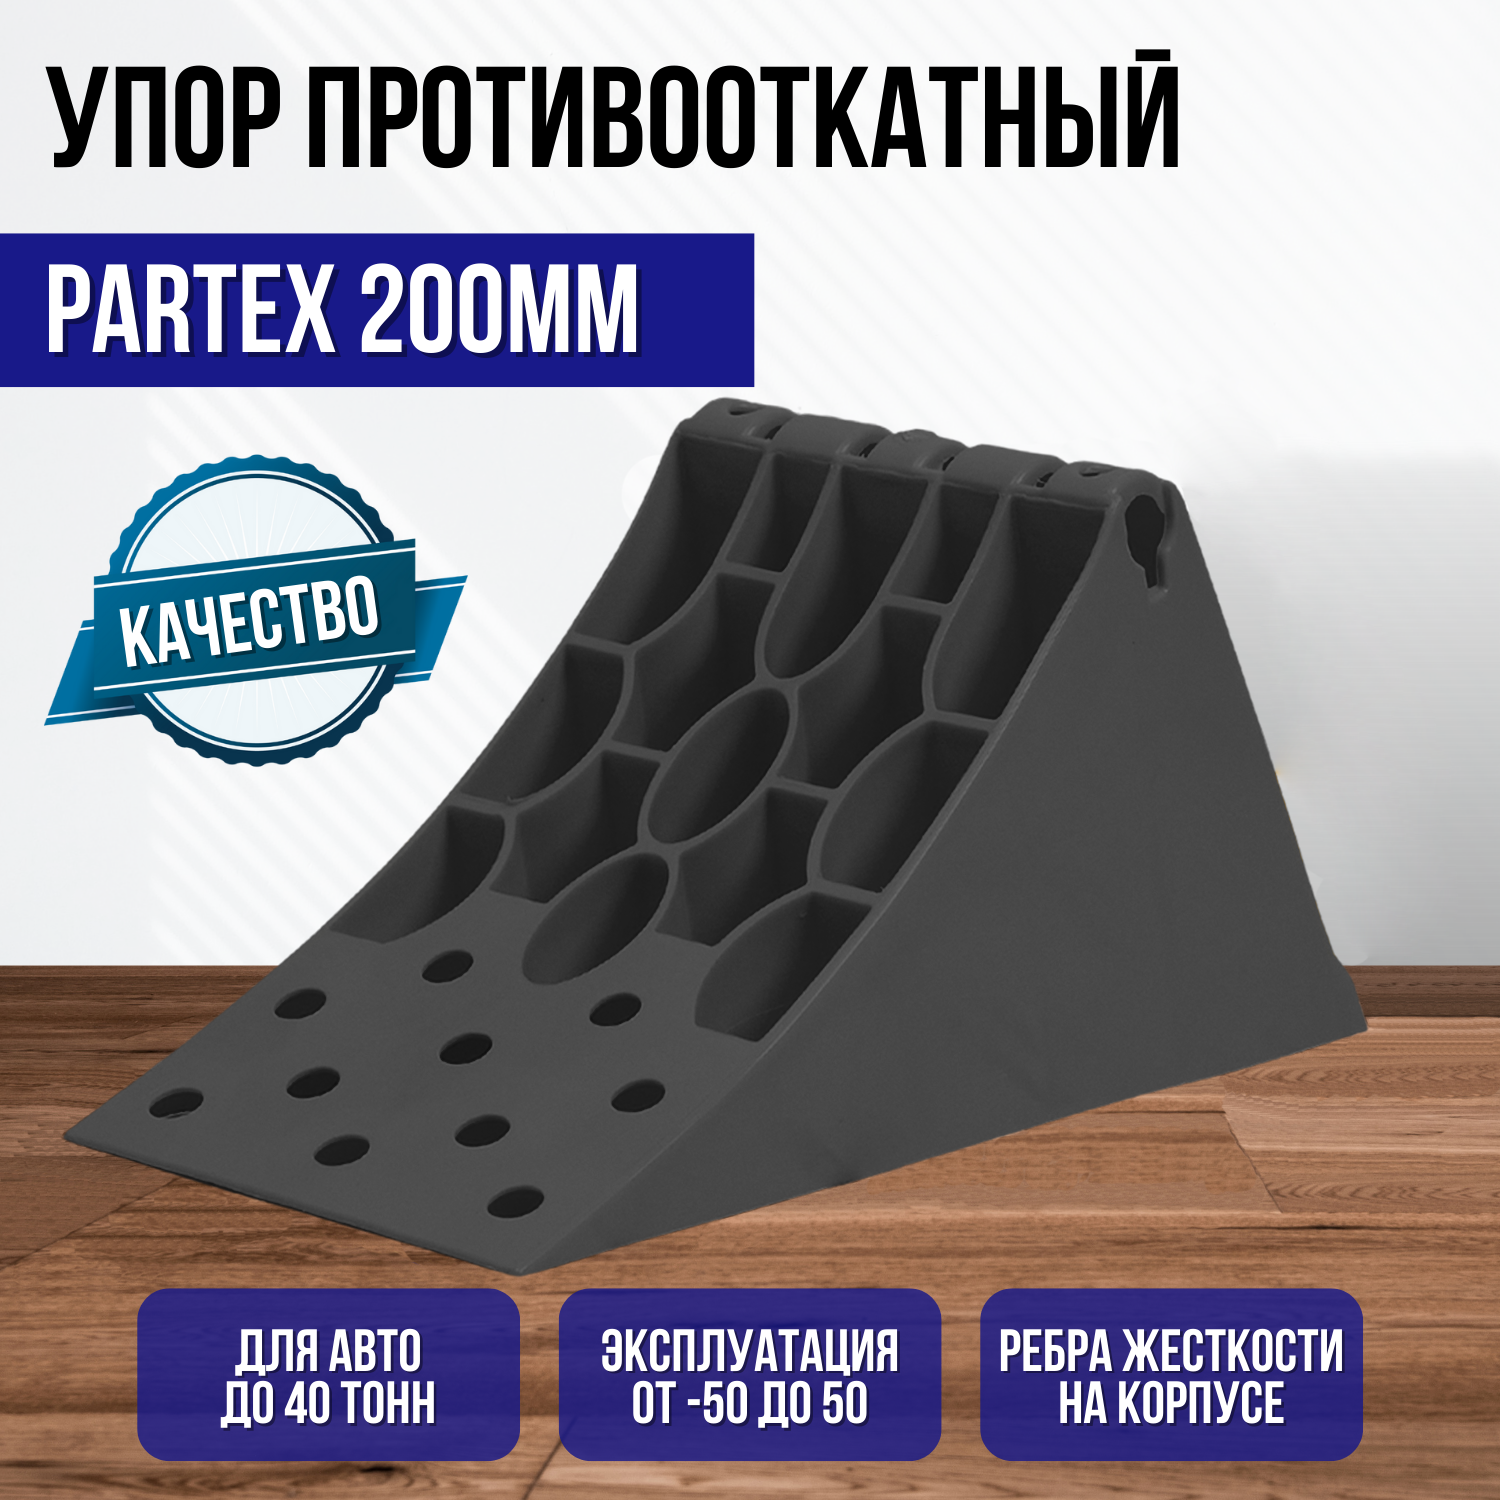 Противооткатный упор Partex 200 мм, пластик, черный НФ-00000009-1 .